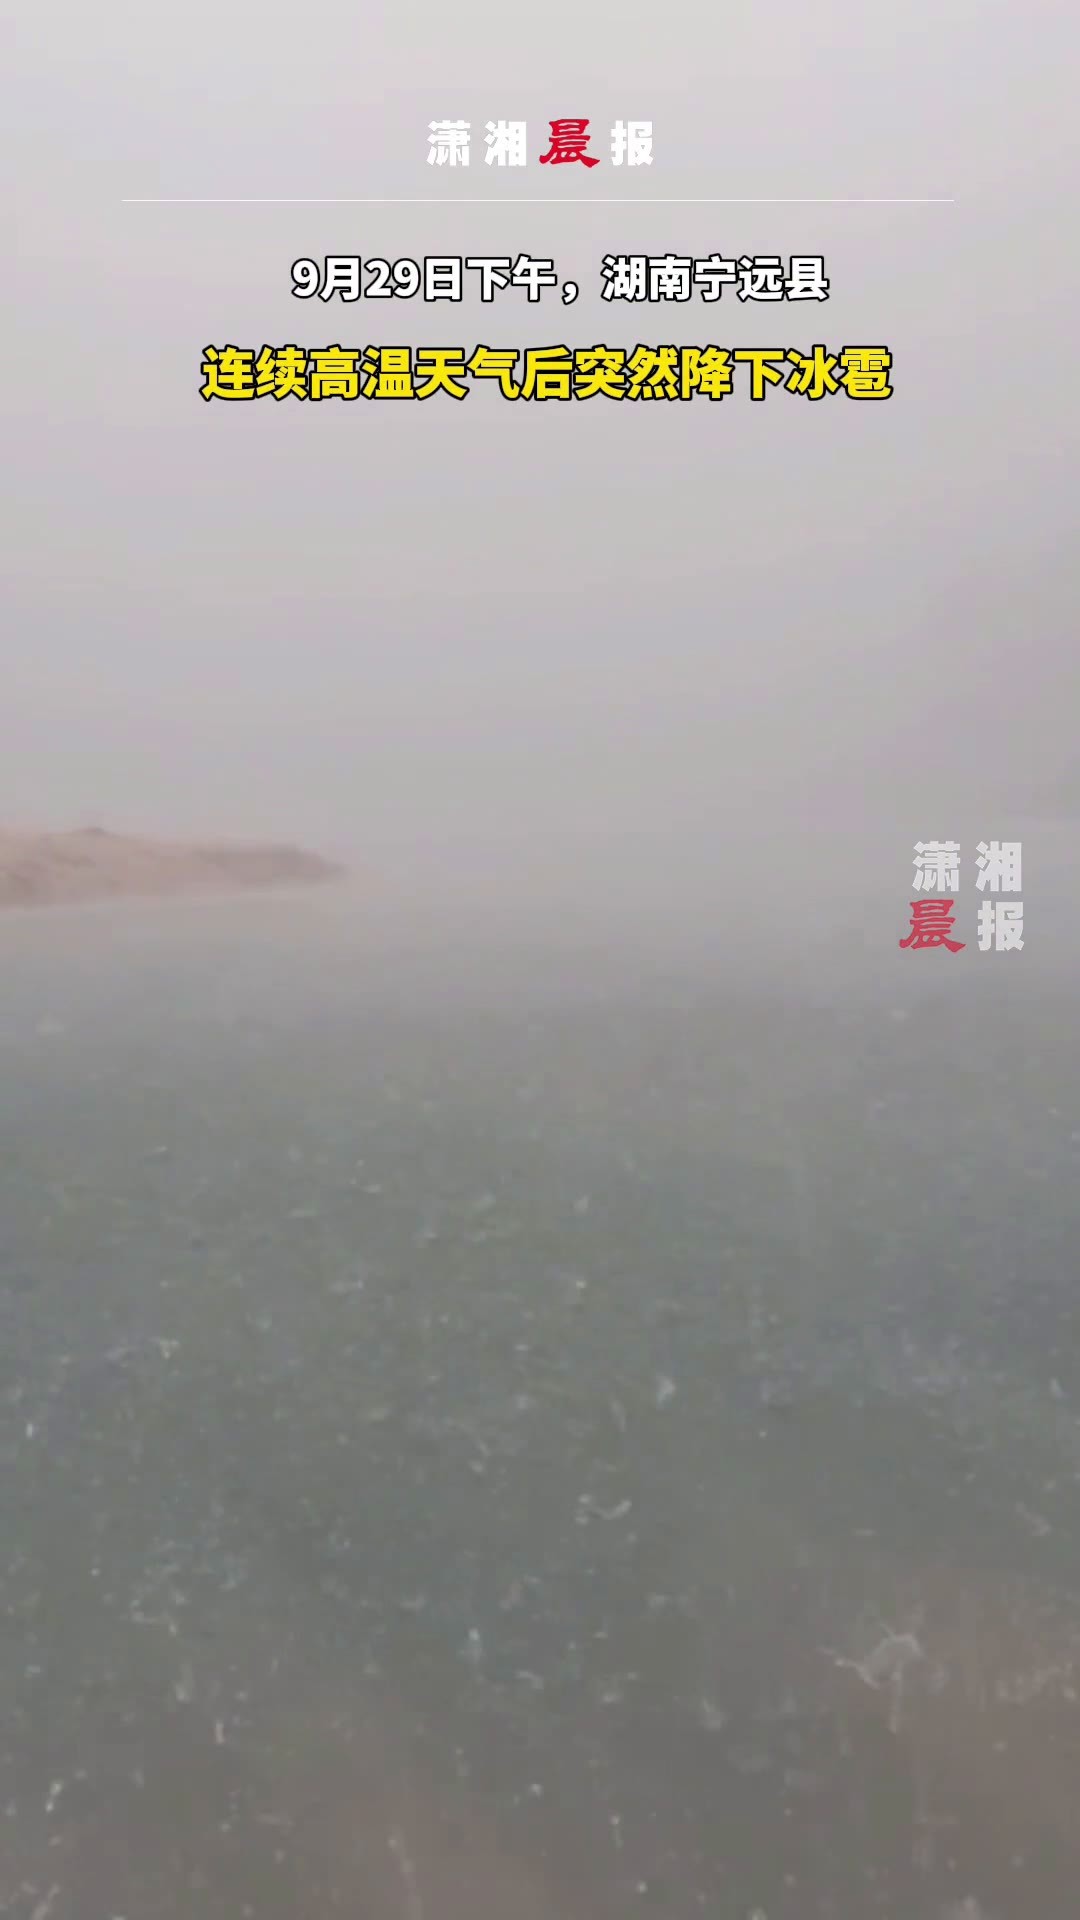 贵州18县遭遇冰雹 最大直径70毫米 - 世相 - 新湖南